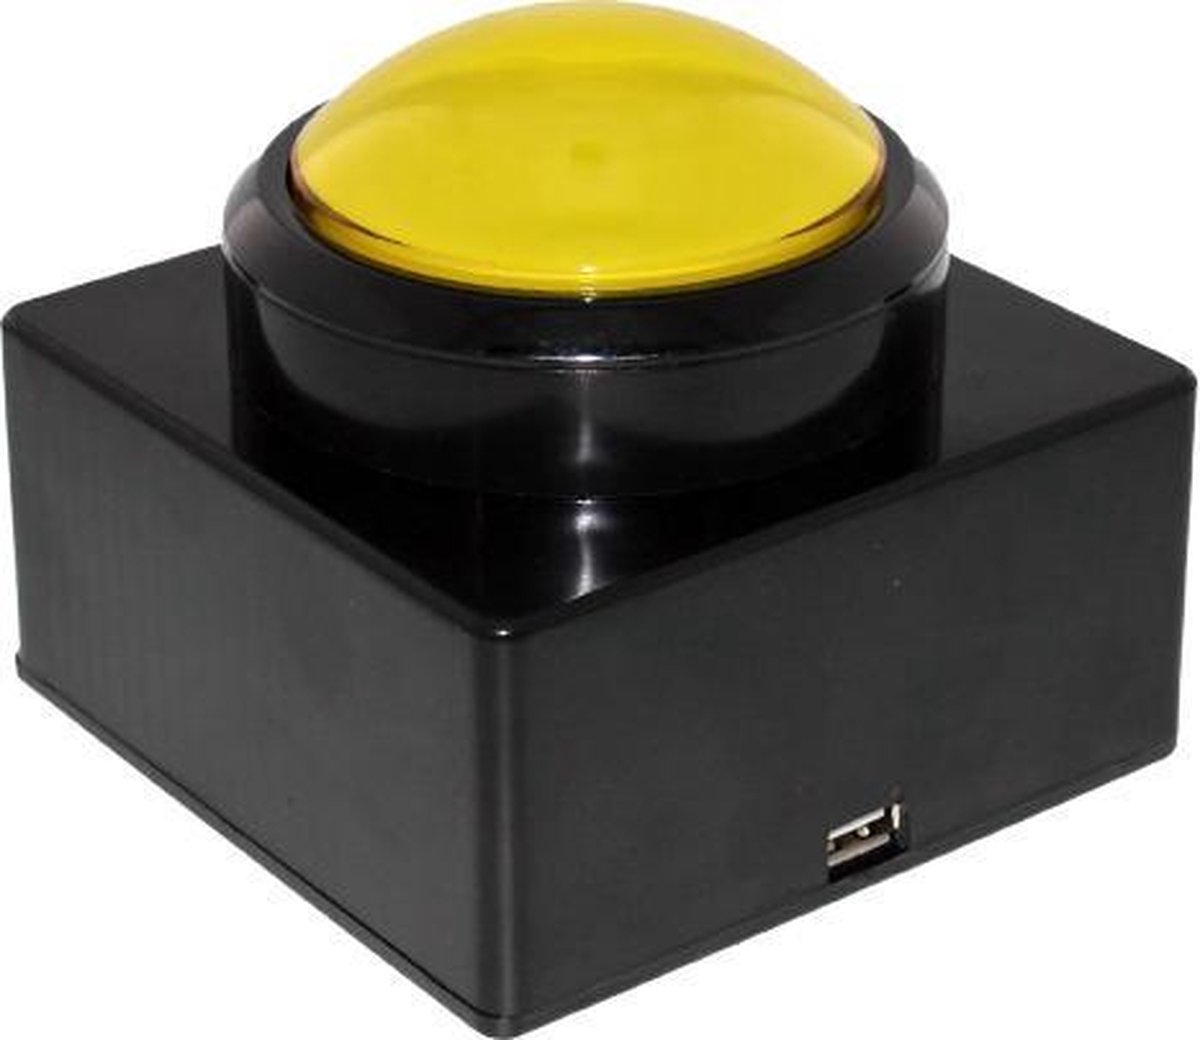 QuizTools USB buzzer drukknop verlicht, geel